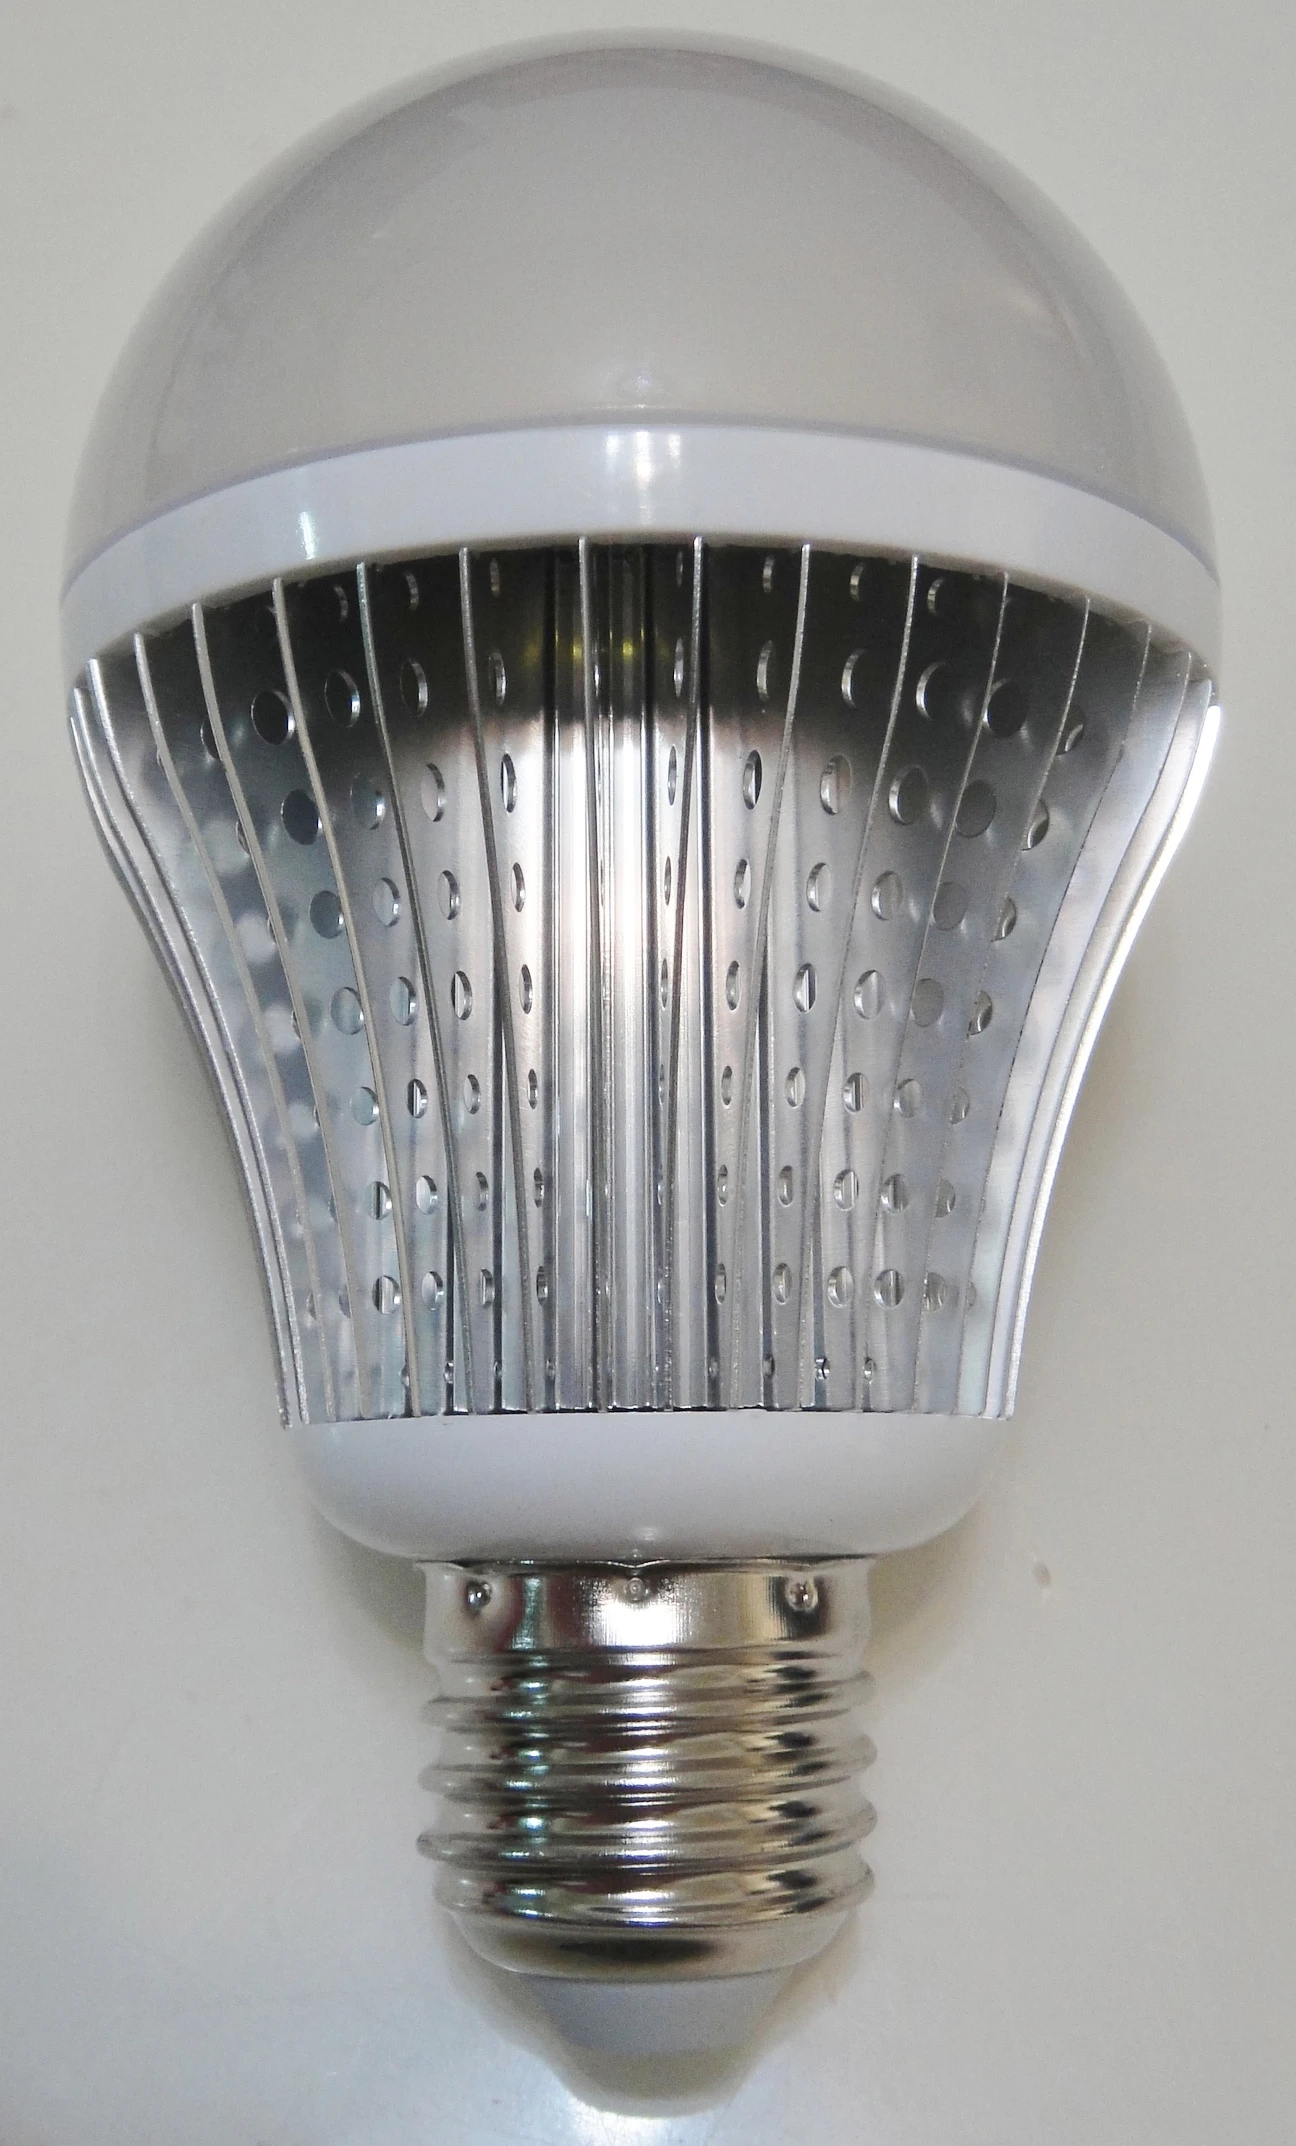 LED 12W Bulb